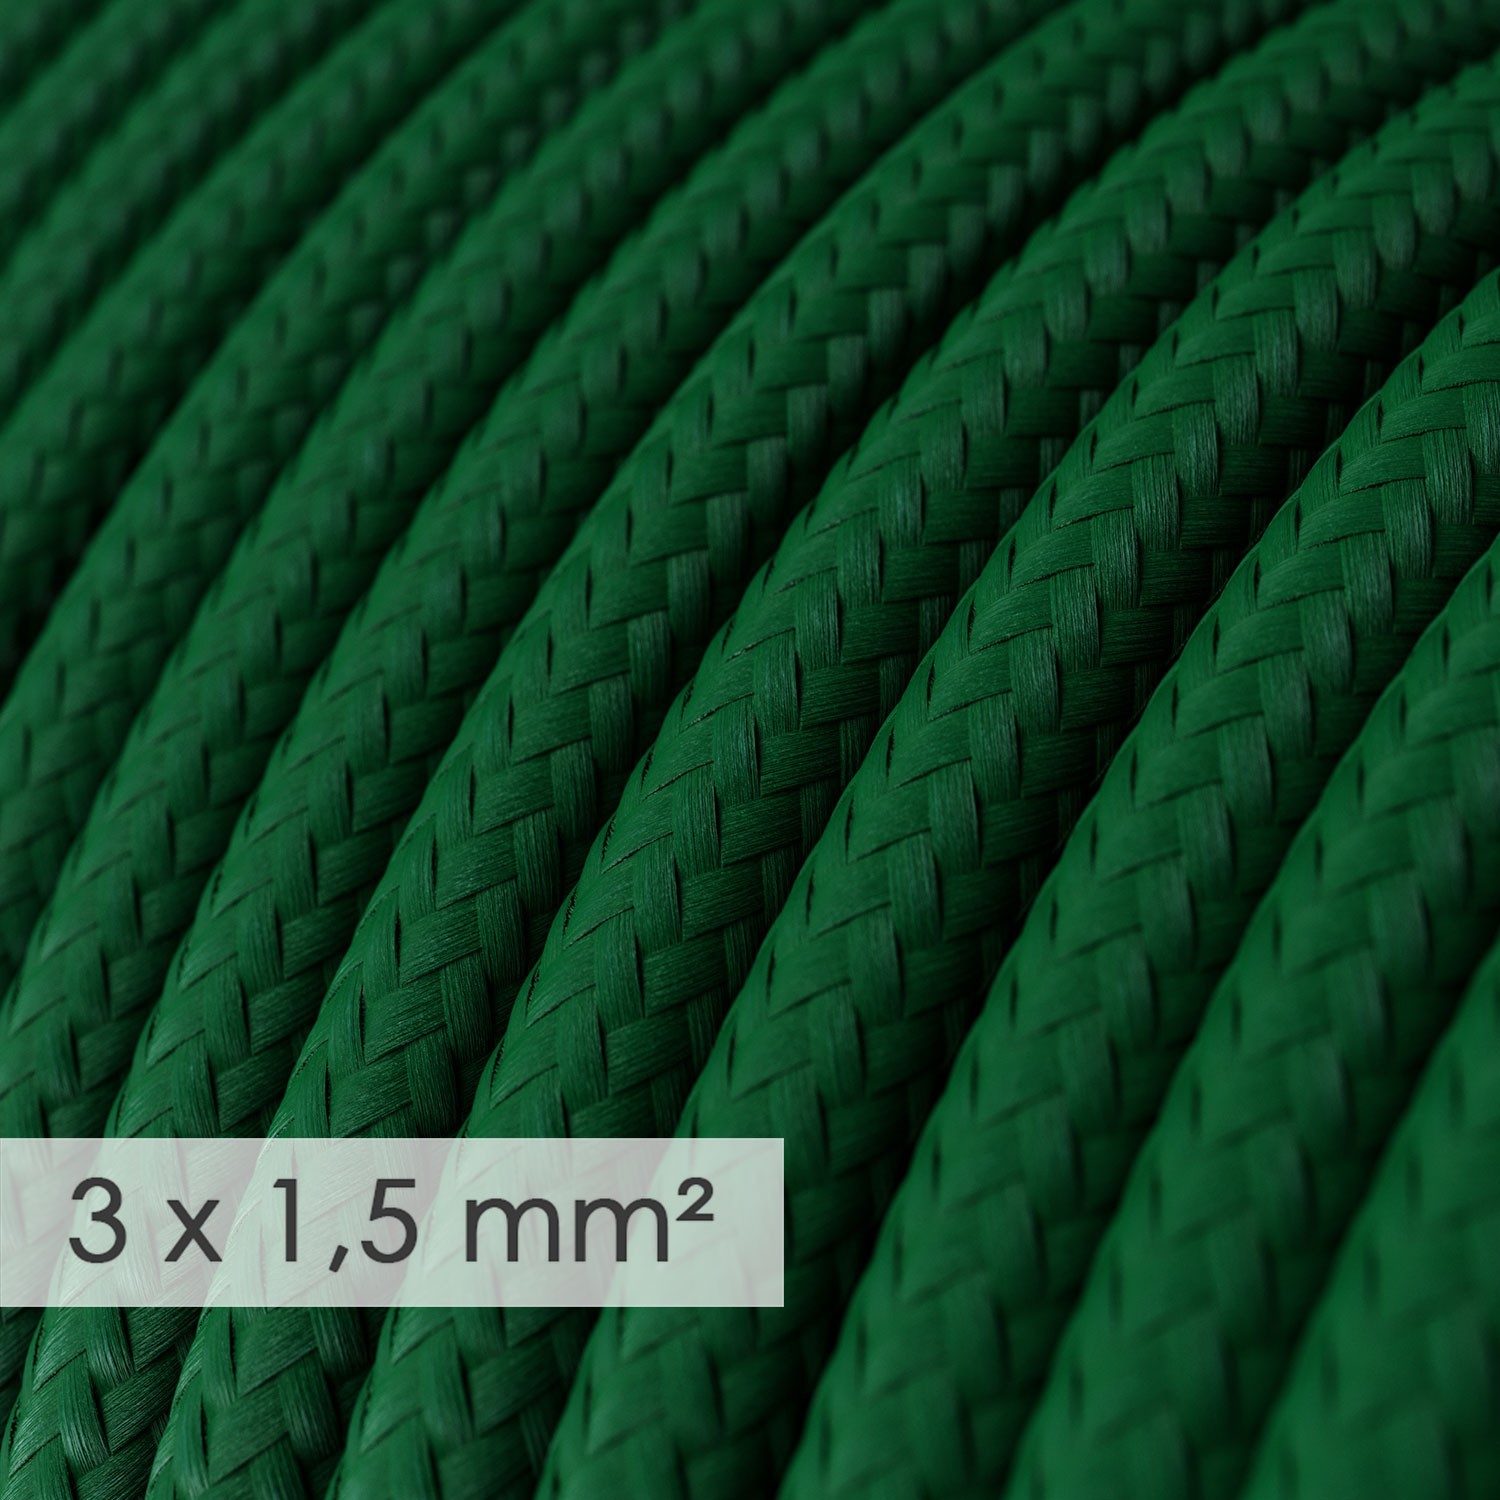 Cavo elettrico a larga sezione 3x1,50 rotondo - tessuto effetto seta Verde scuro RM21